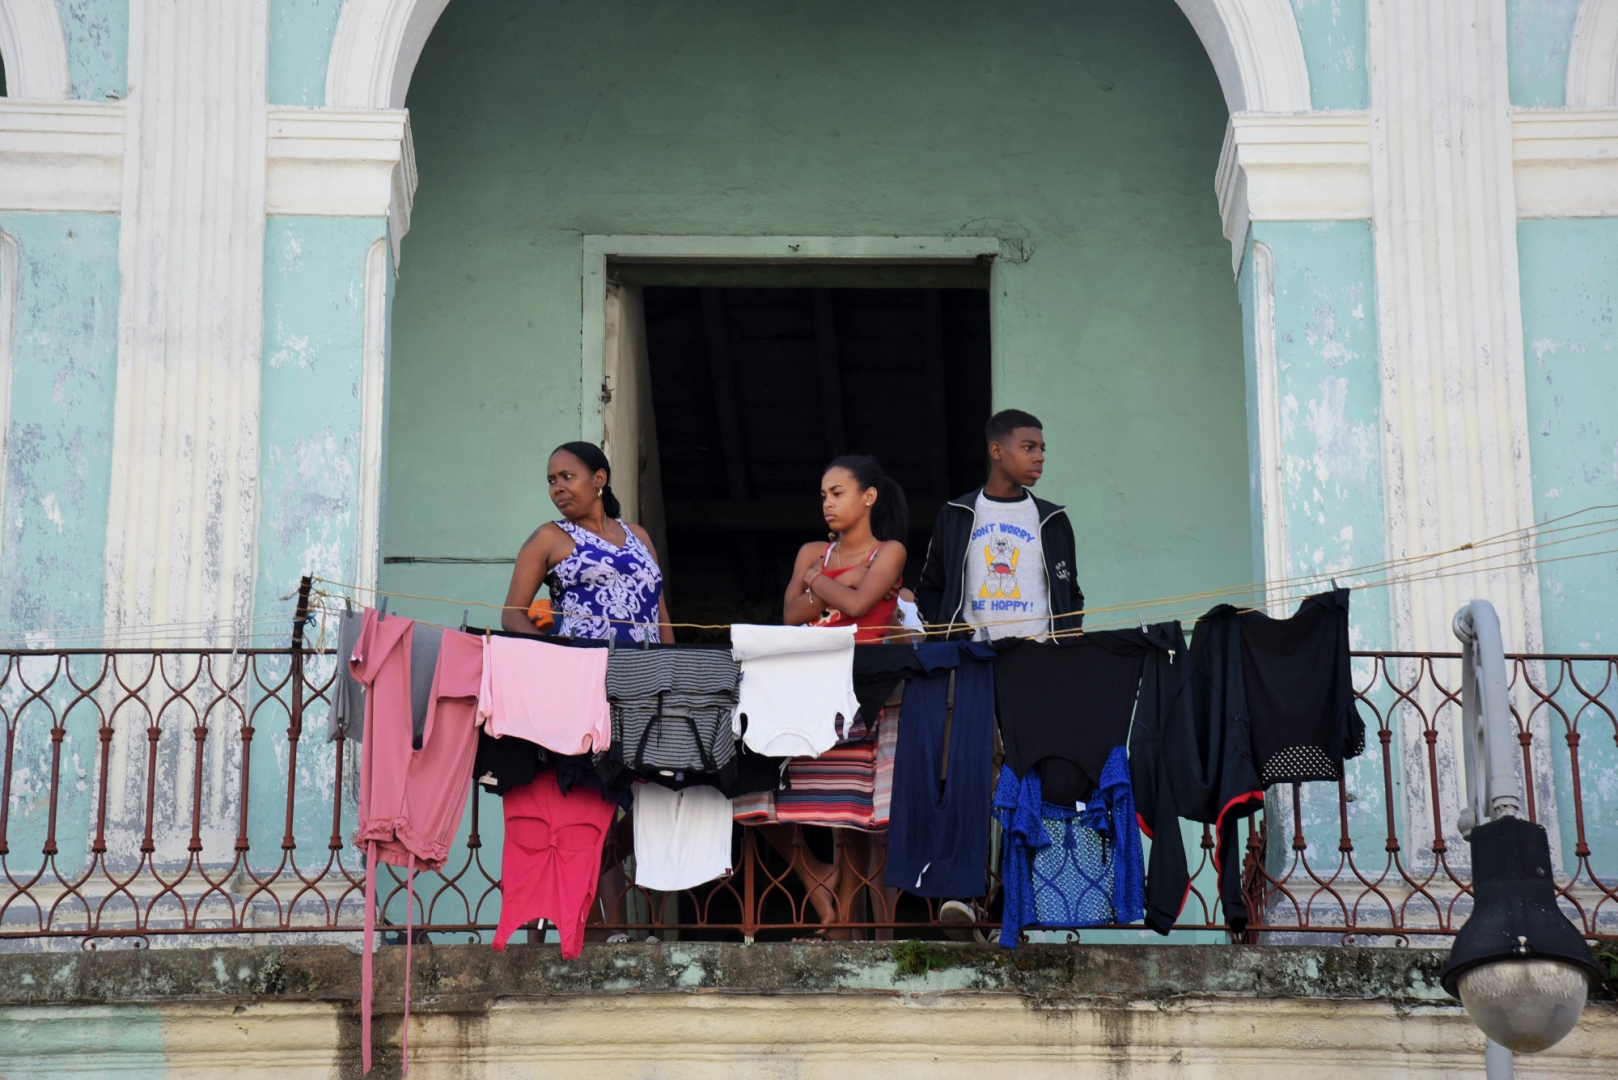 Люди живут на Кубе «свободно», с открытыми дверями и окнами, совершенно свободные от стеснения. Сосед знает всё о своём соседе. Вся жизнь как на ладони. Гавана, Куба